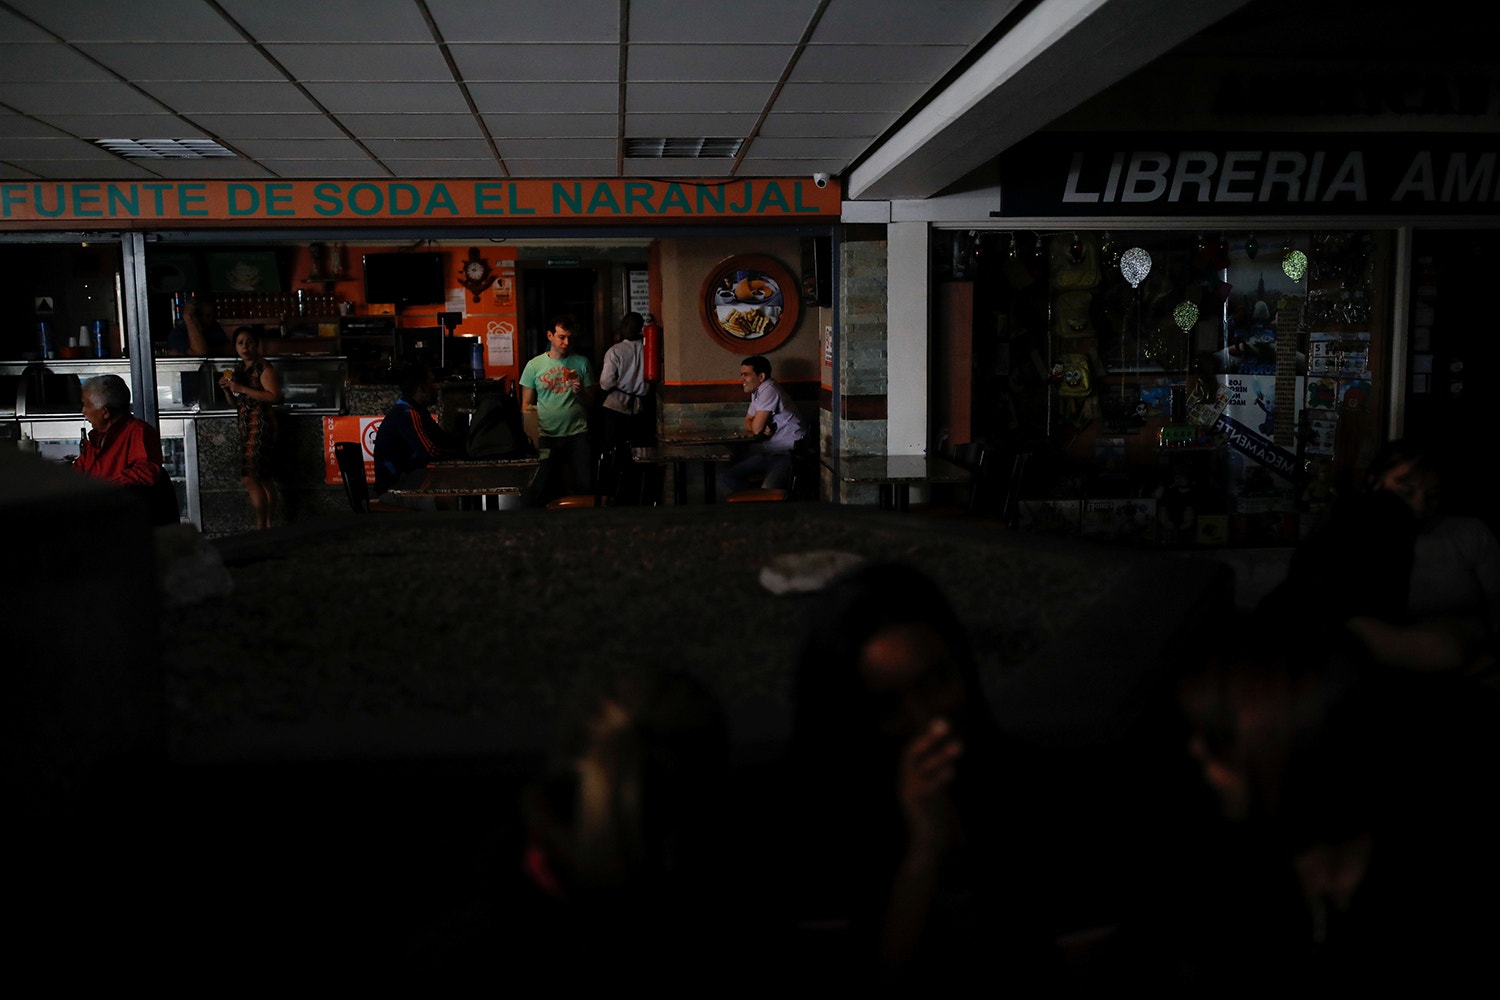  V&aacute;rias pessoas aguardam que a luz seja reposta num centro comercial em Caracas /Foto: Carlos Garcia Rawlins - Reuters 